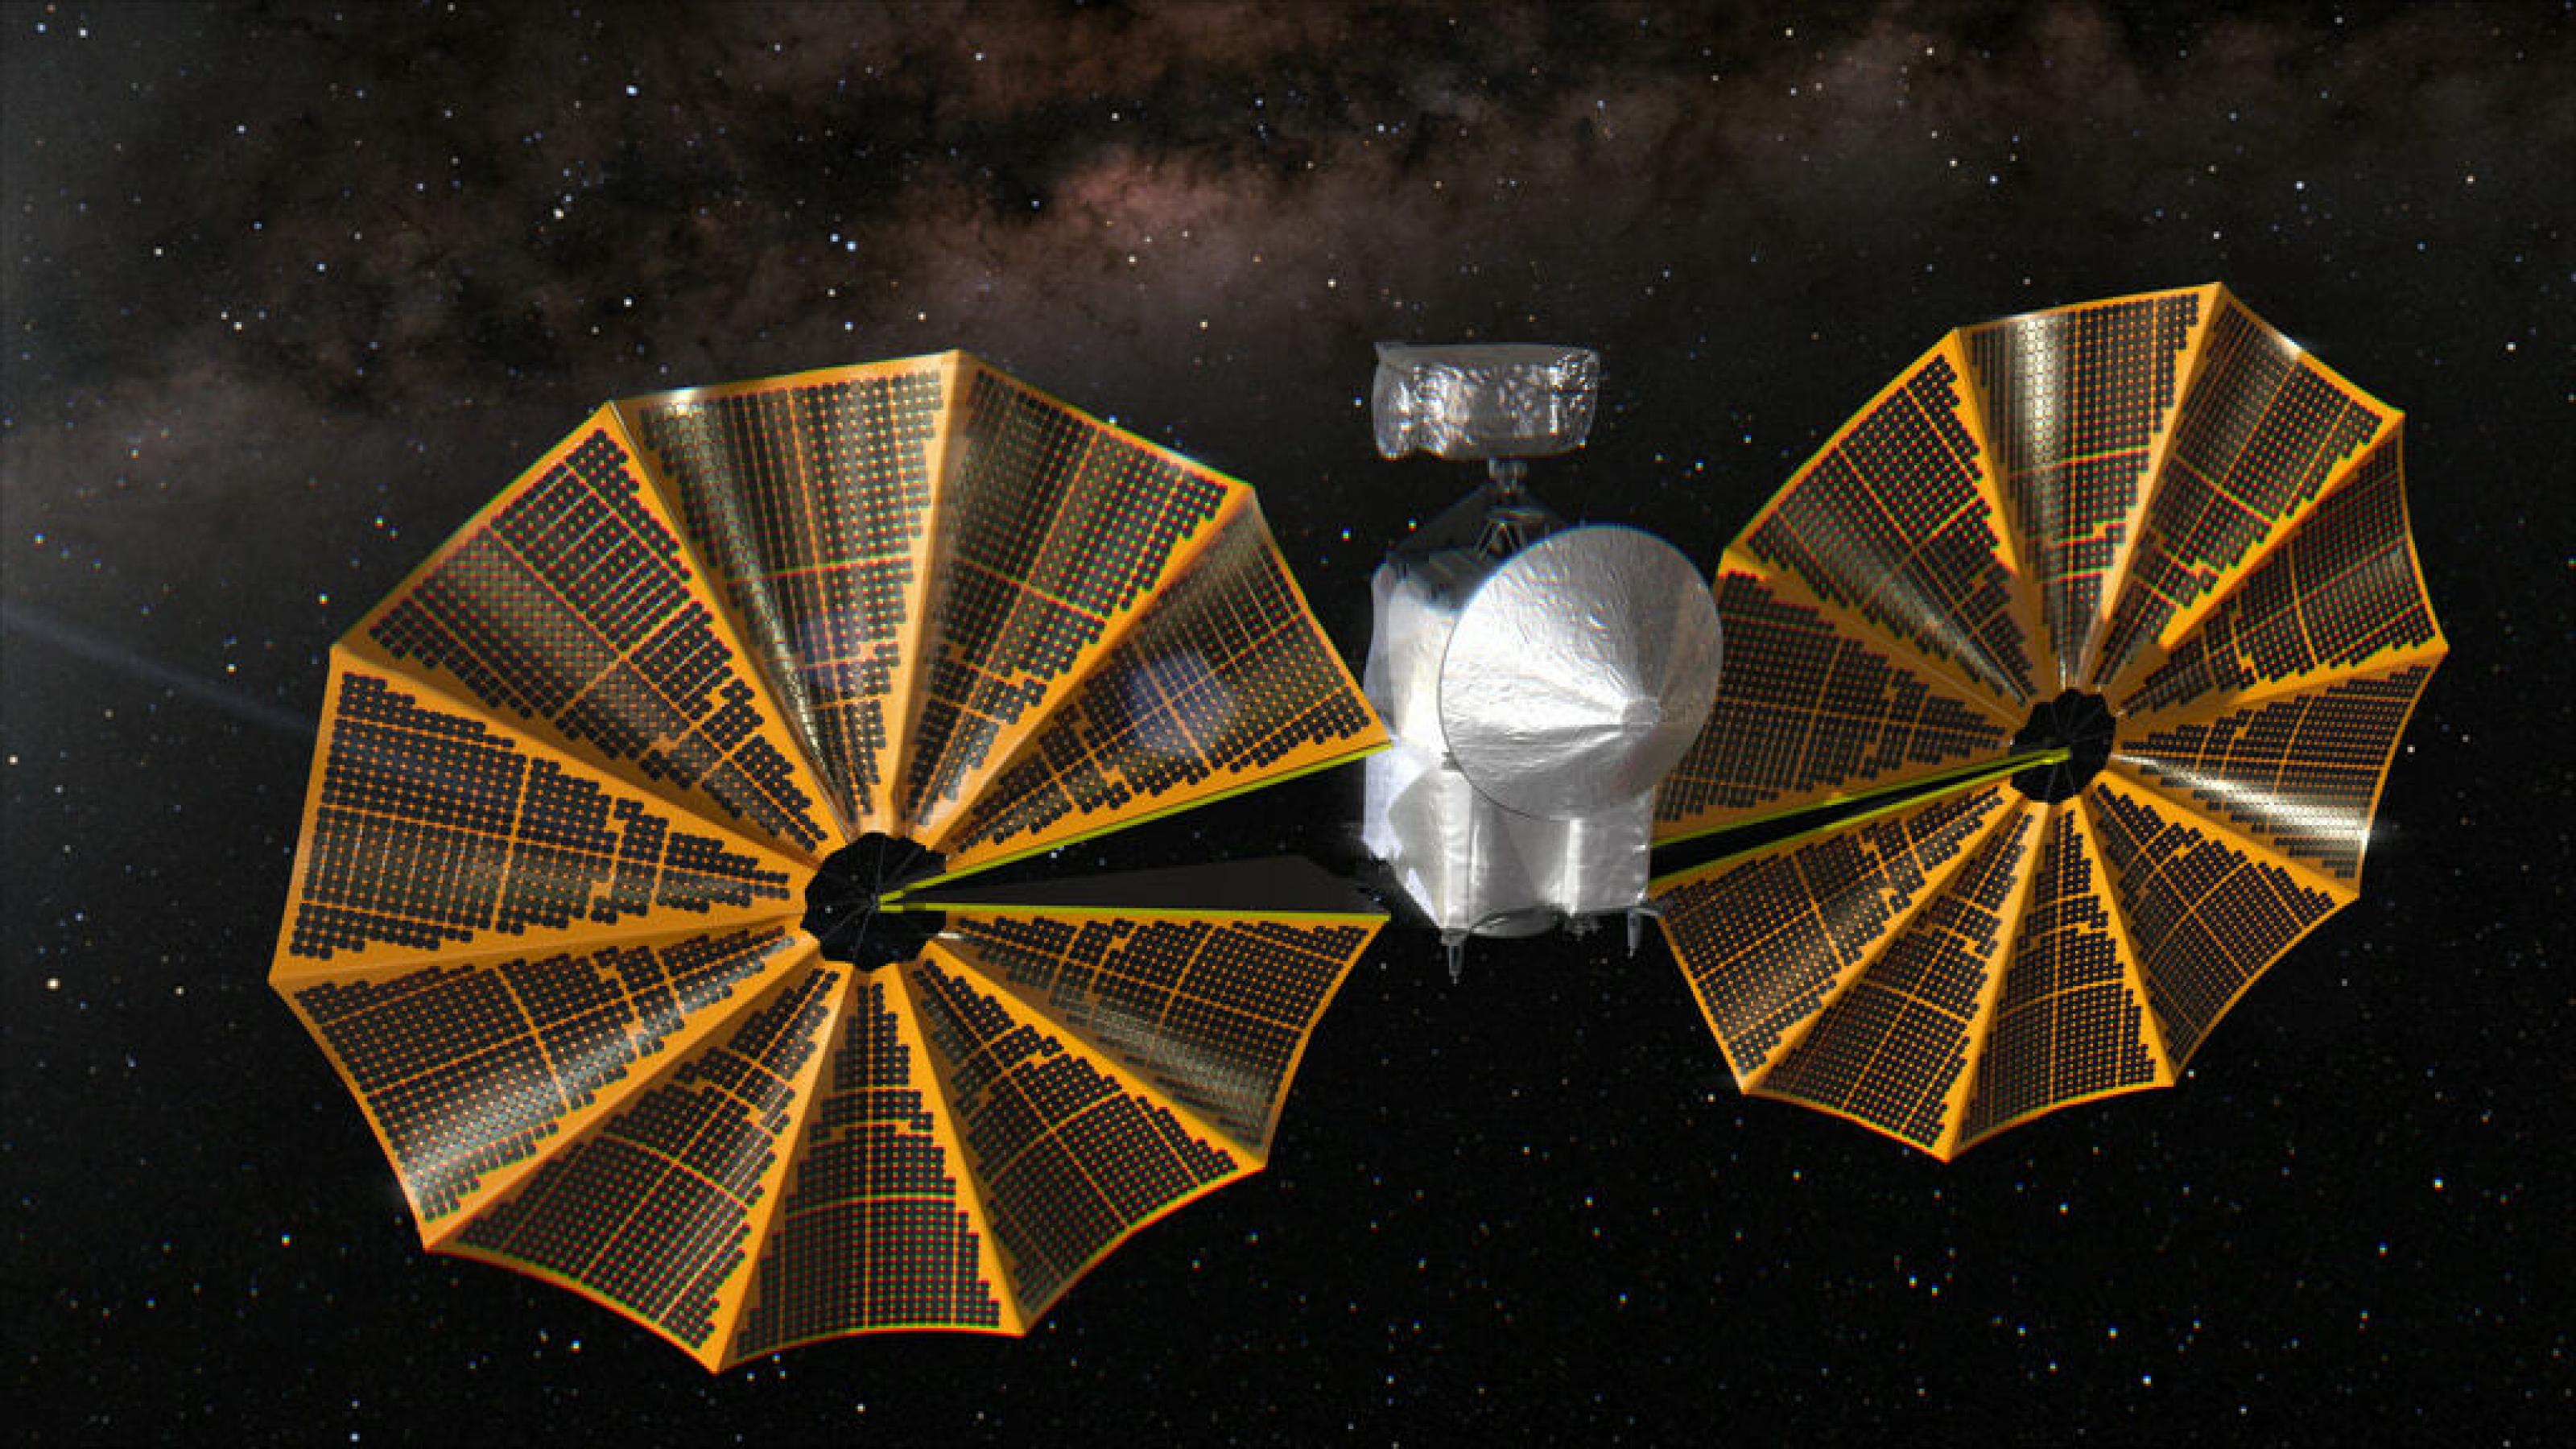 Grafik von Lucy, ein grauer Sondenkörper mit Parabolantenne und hervorstehender Instrumentenplattform. Gerade werden kreisförmige Solarzellen entfaltet.